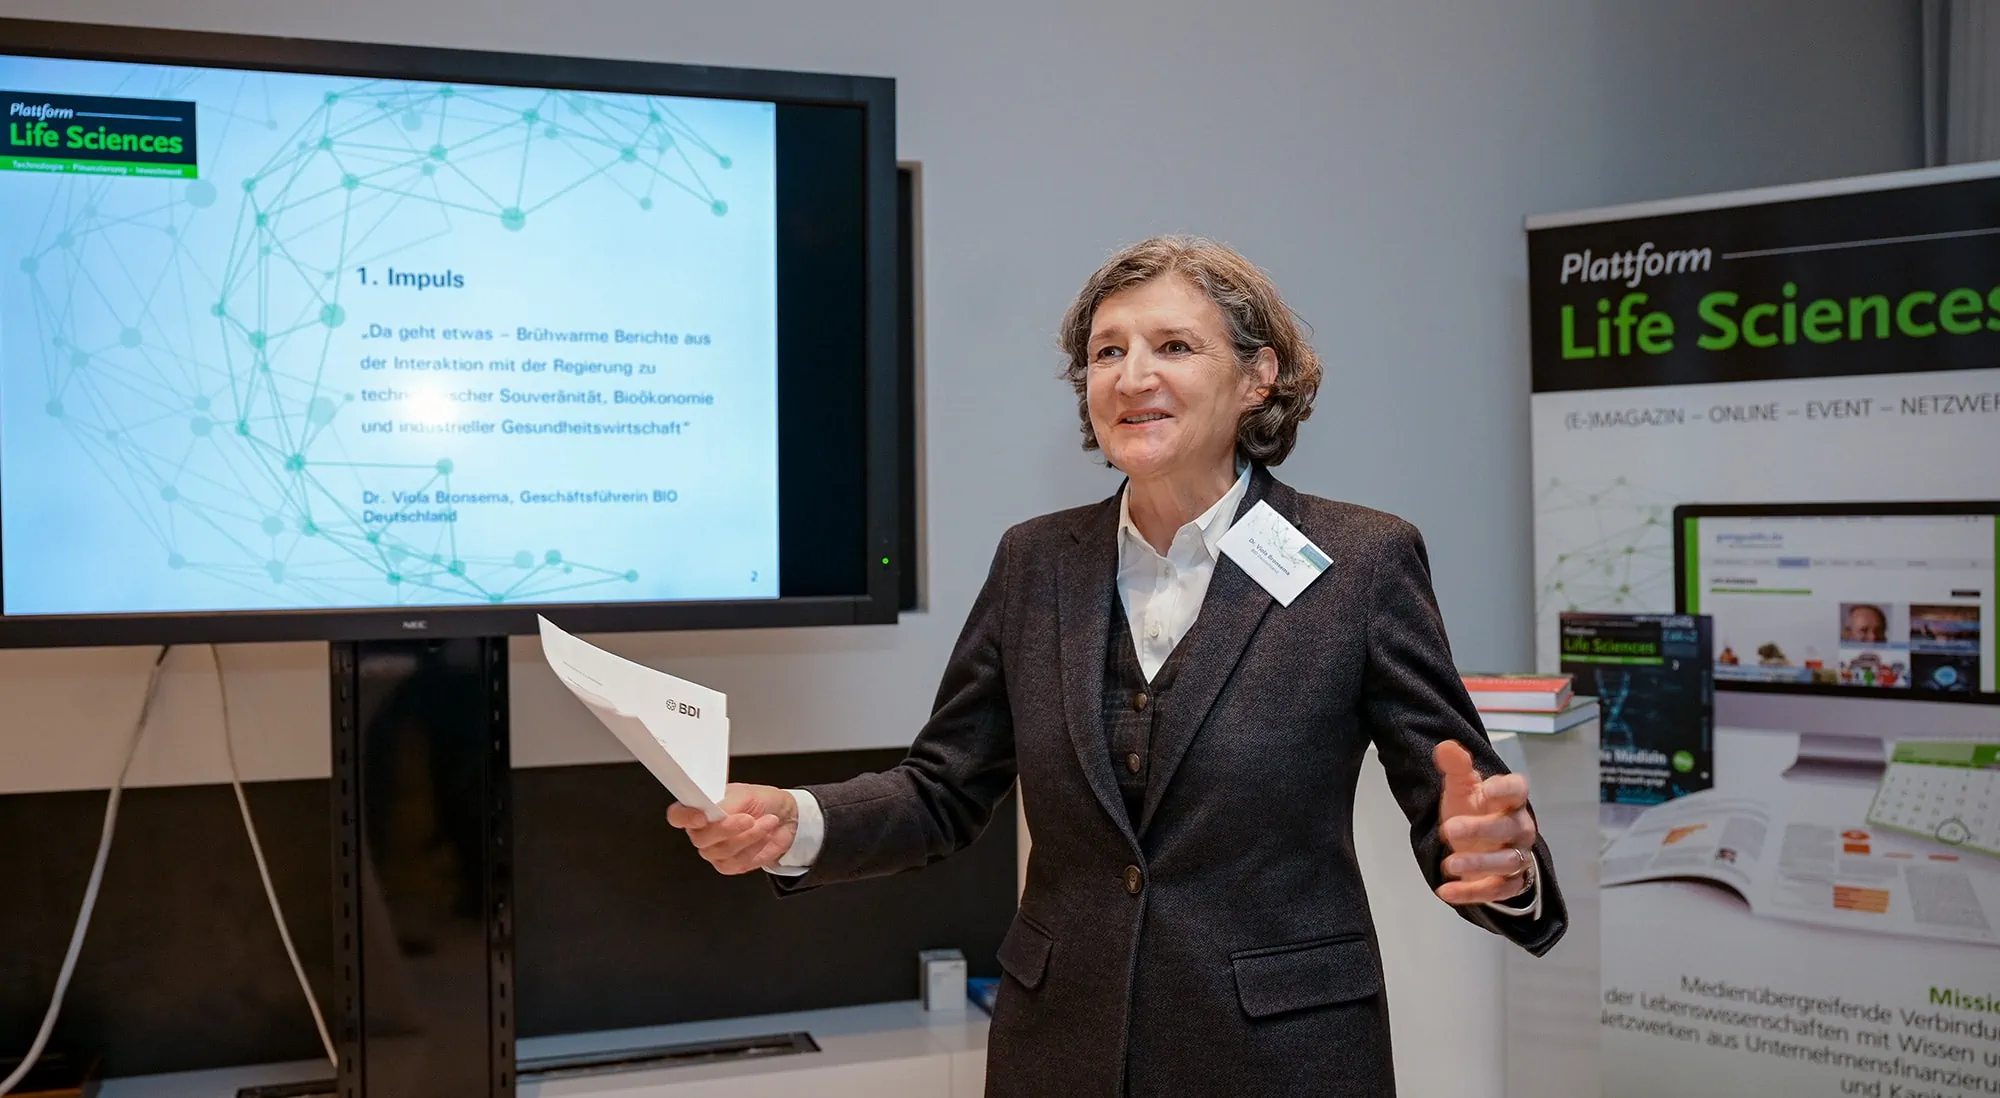 Dr. Viola Bronsema, Geschäftsführerin BIO Deutschland